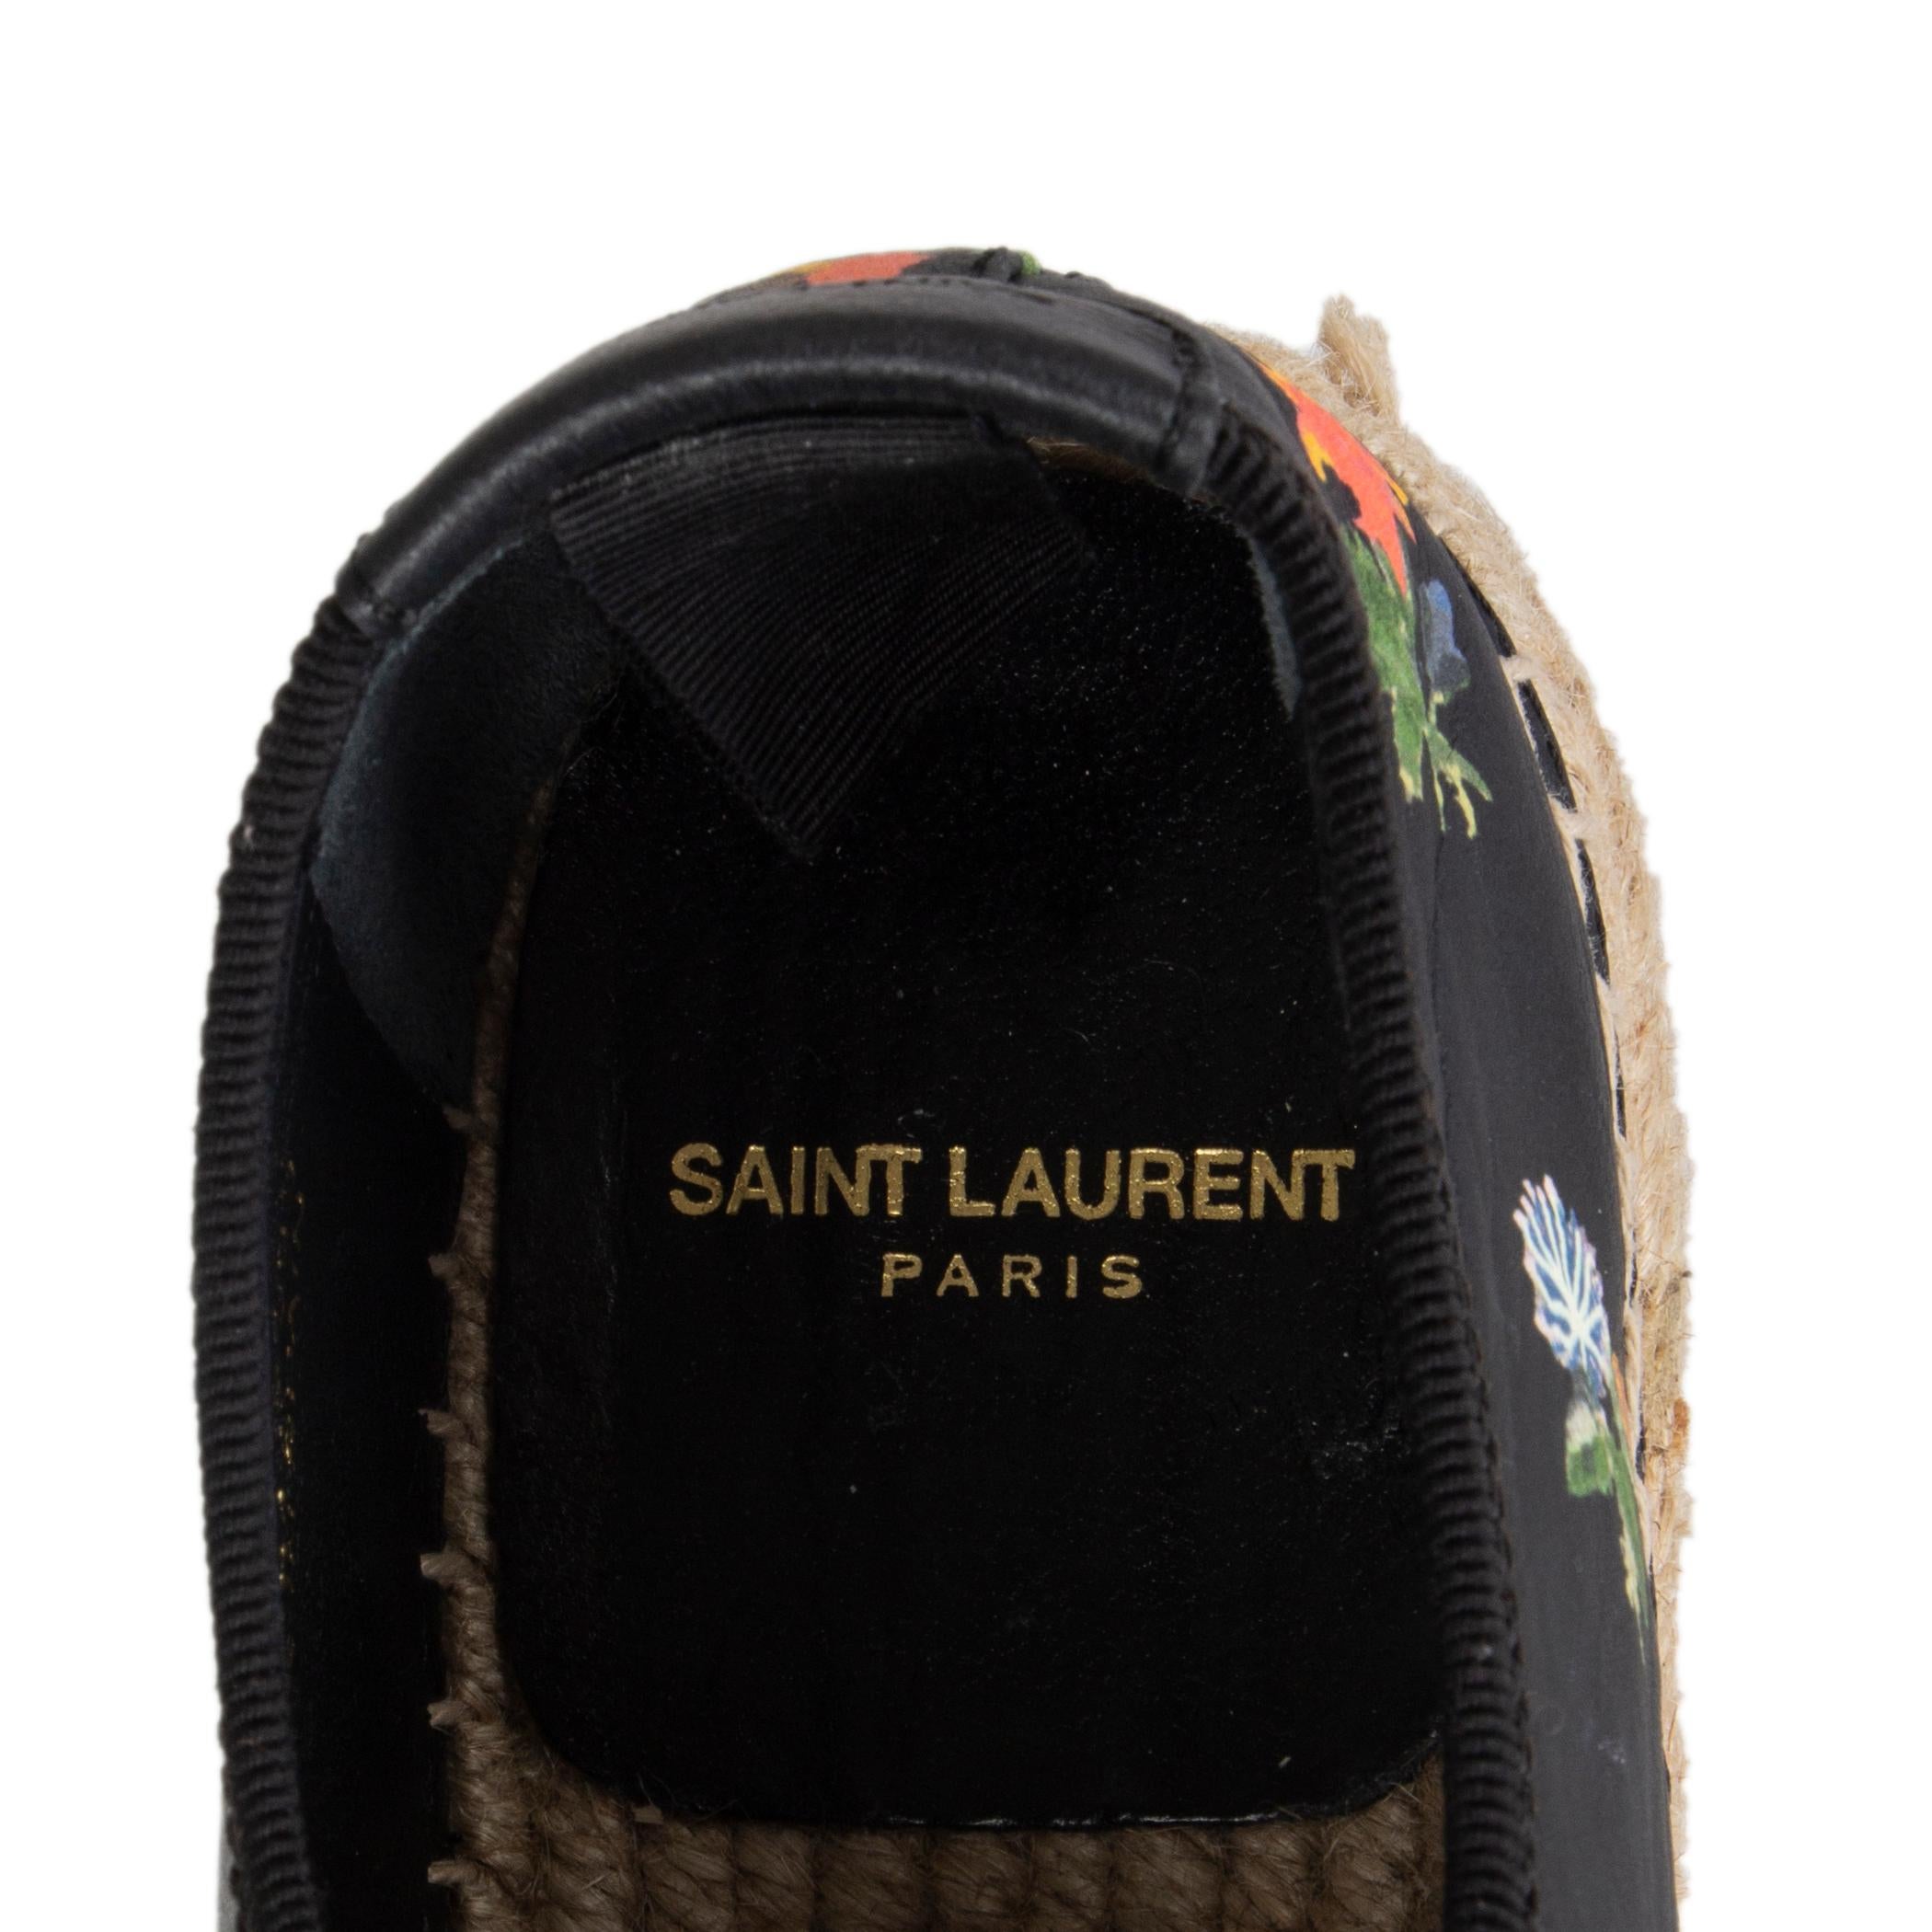 SAINT LAURENT black leather GRUNGE FLORAL Espadrilles Flats Shoes 39.5 For Sale 1